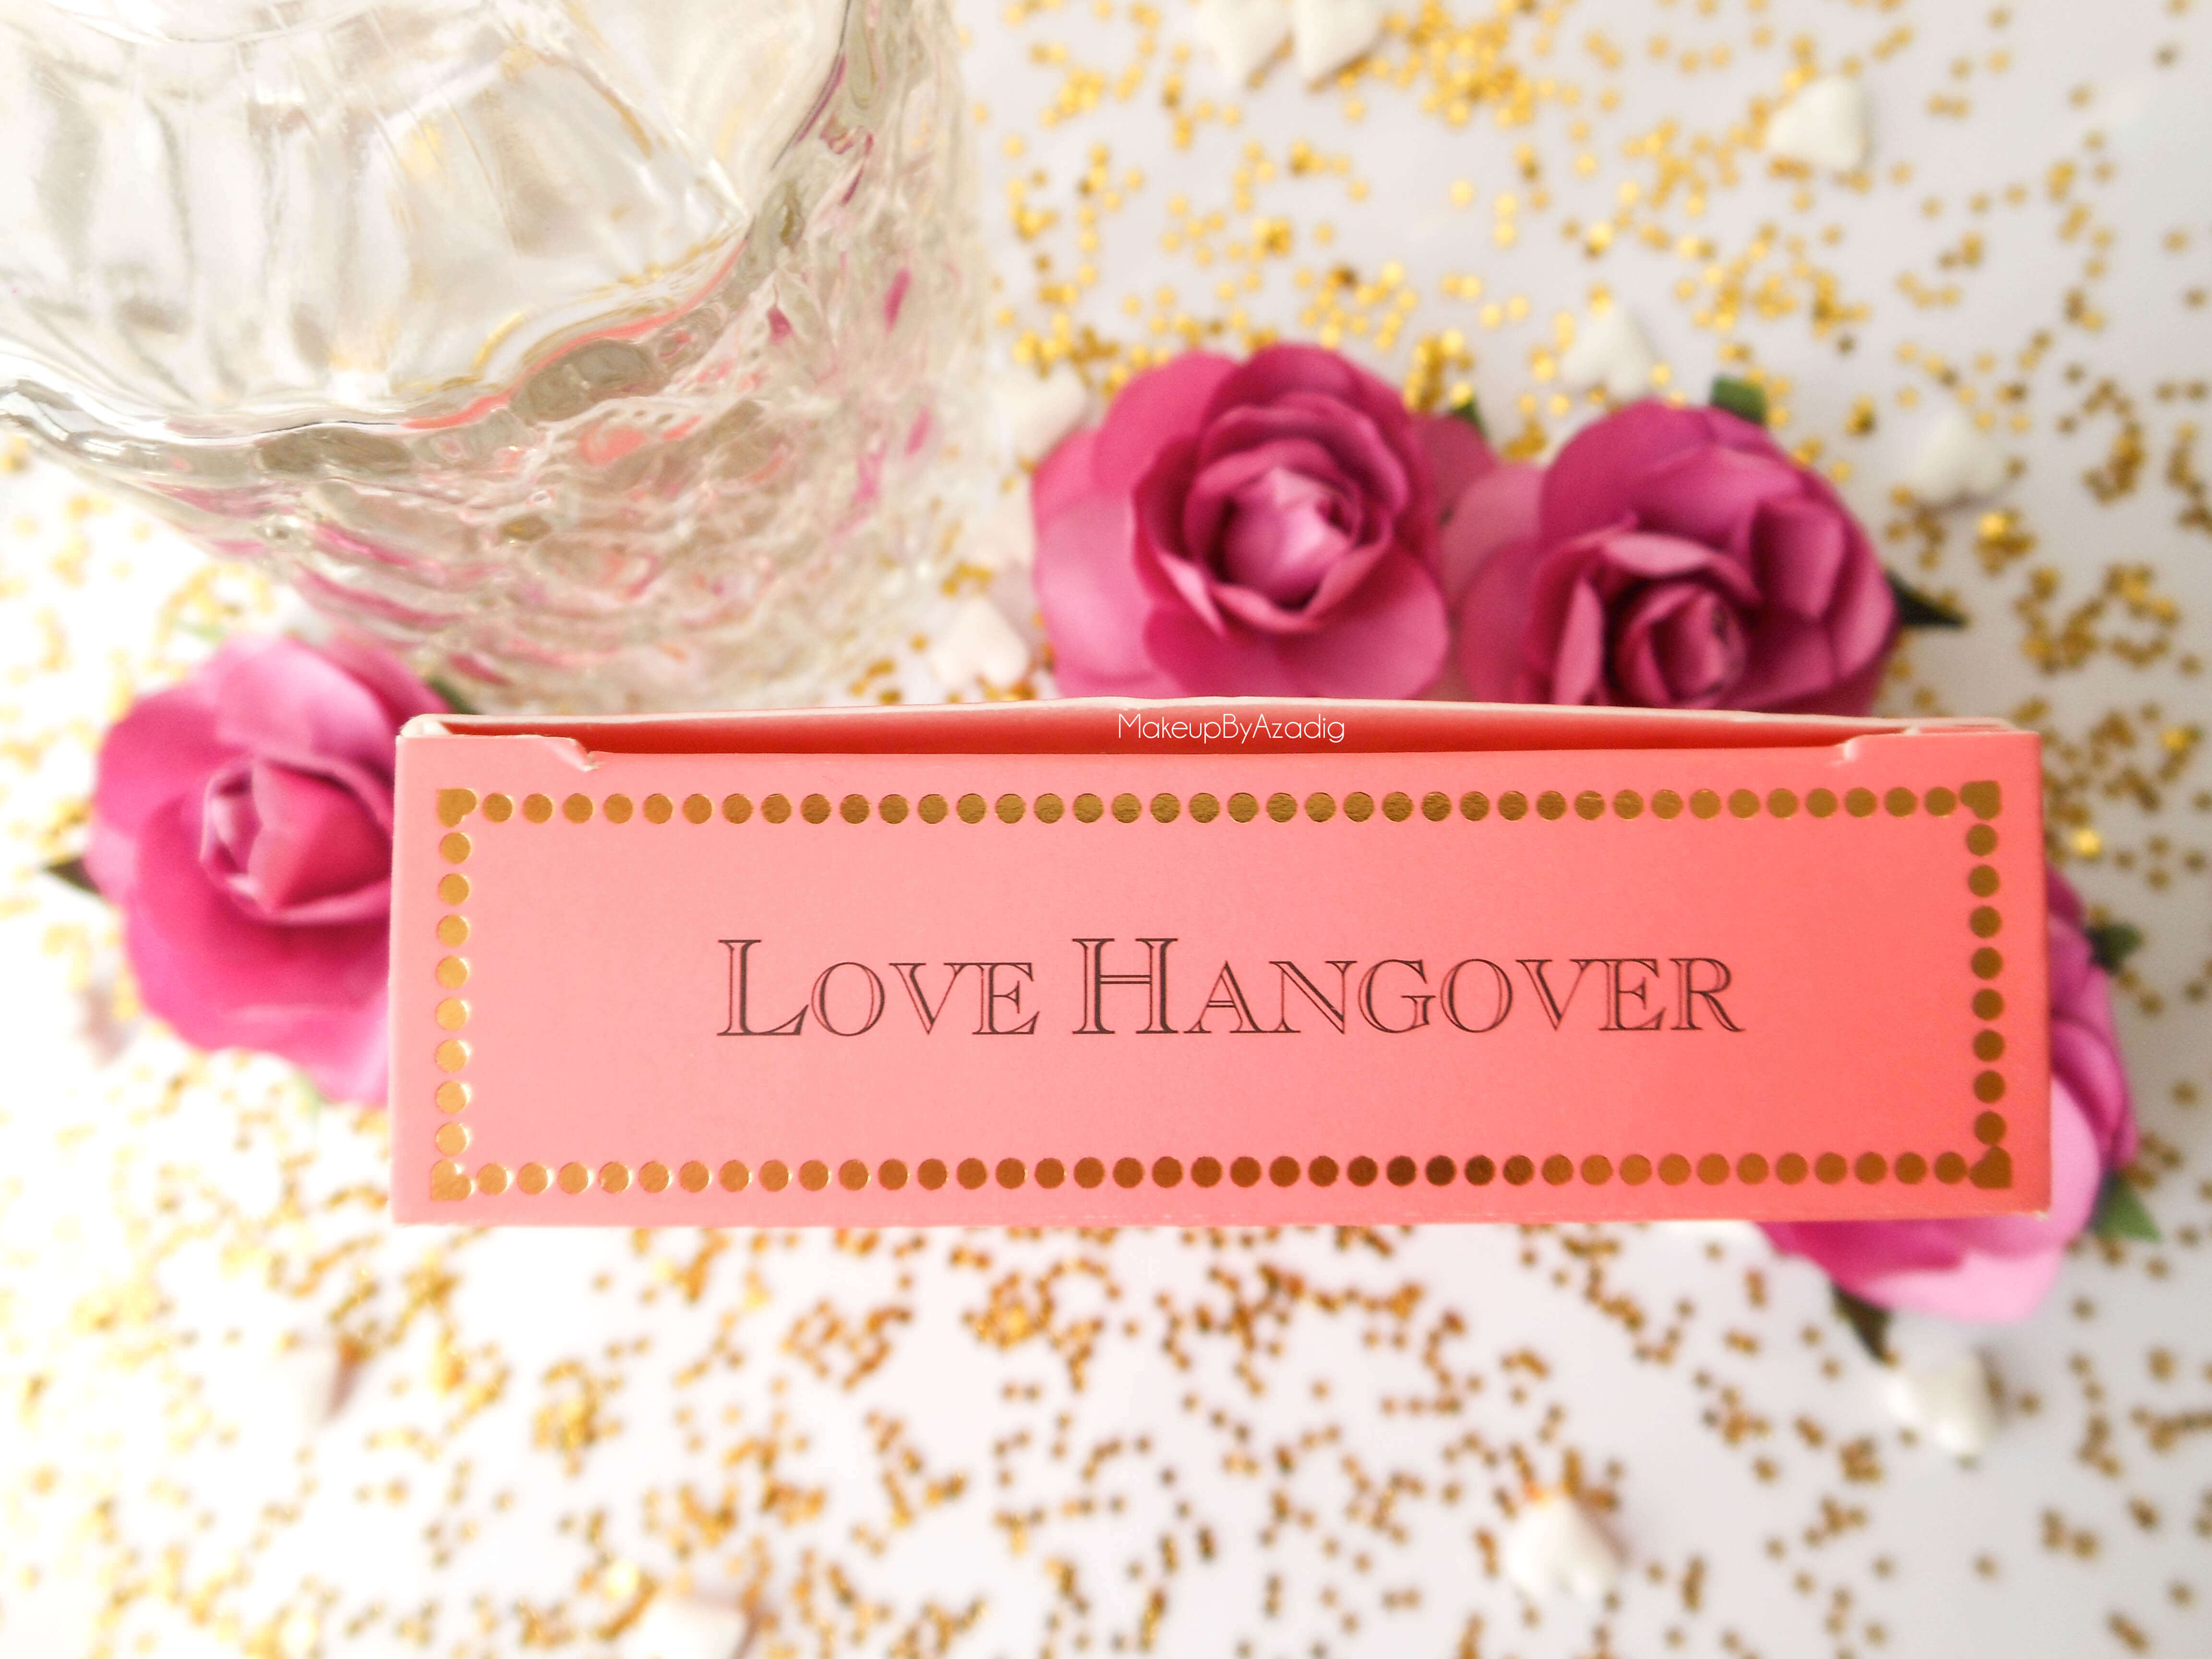 makeupbyazadig-love-flush-blush-too-faced-love-hangover-blog-influencer-sephora-france-gold